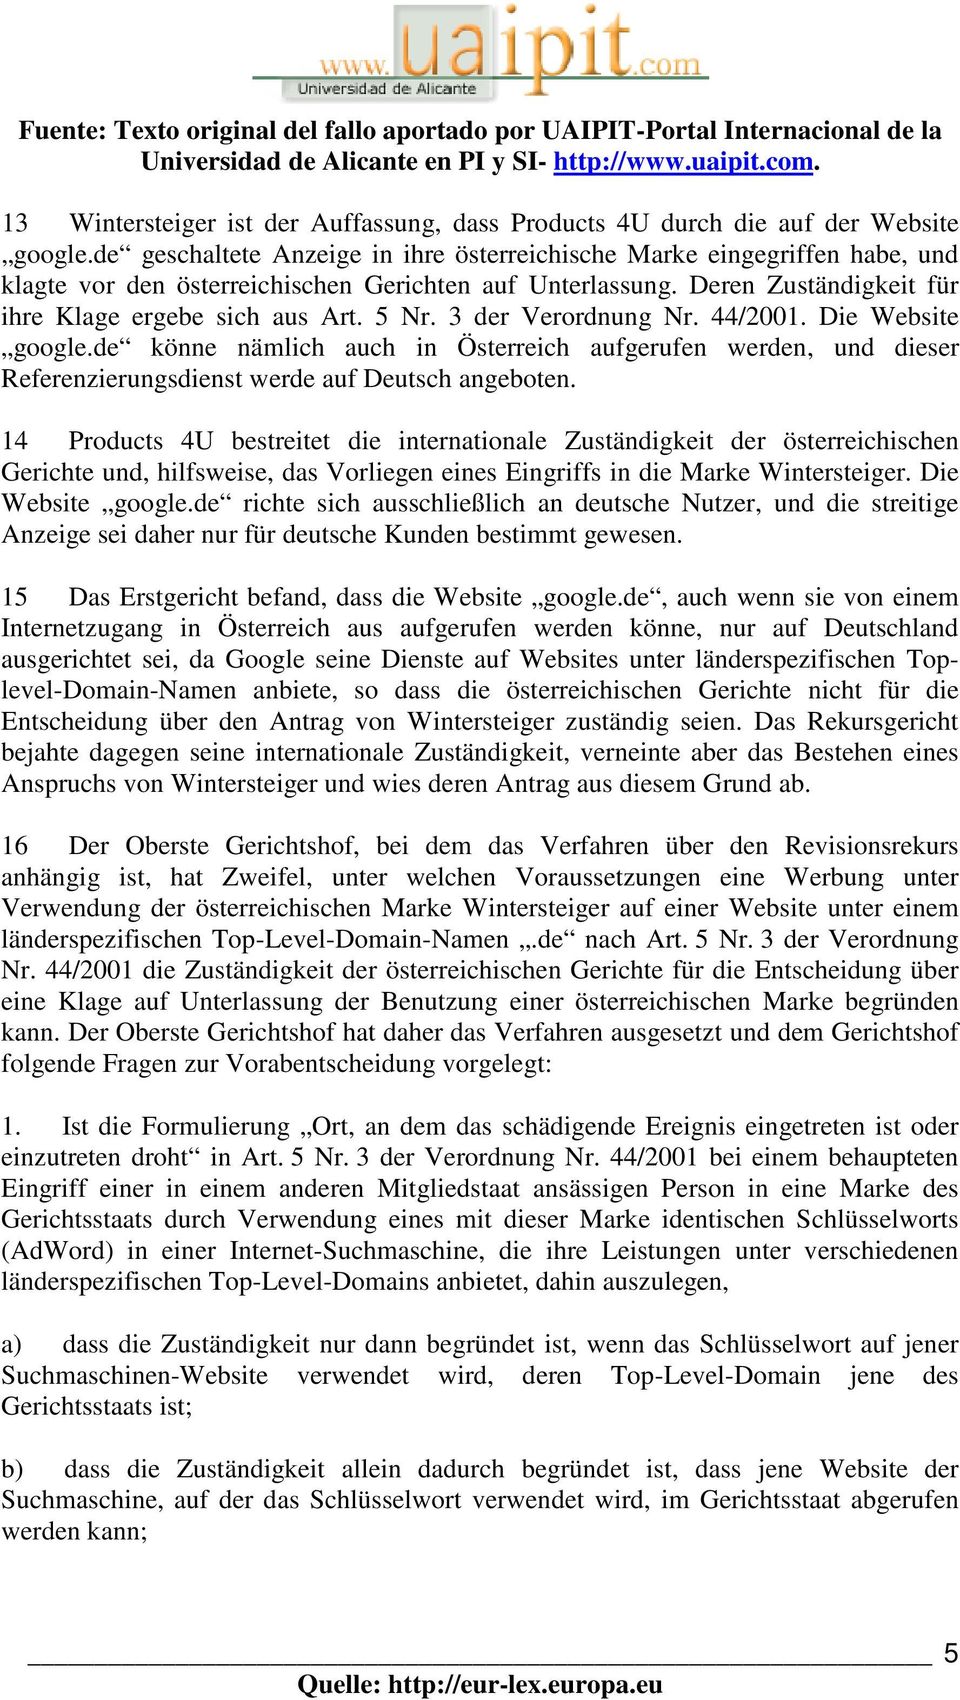 3 der Verordnung Nr. 44/2001. Die Website google.de könne nämlich auch in Österreich aufgerufen werden, und dieser Referenzierungsdienst werde auf Deutsch angeboten.